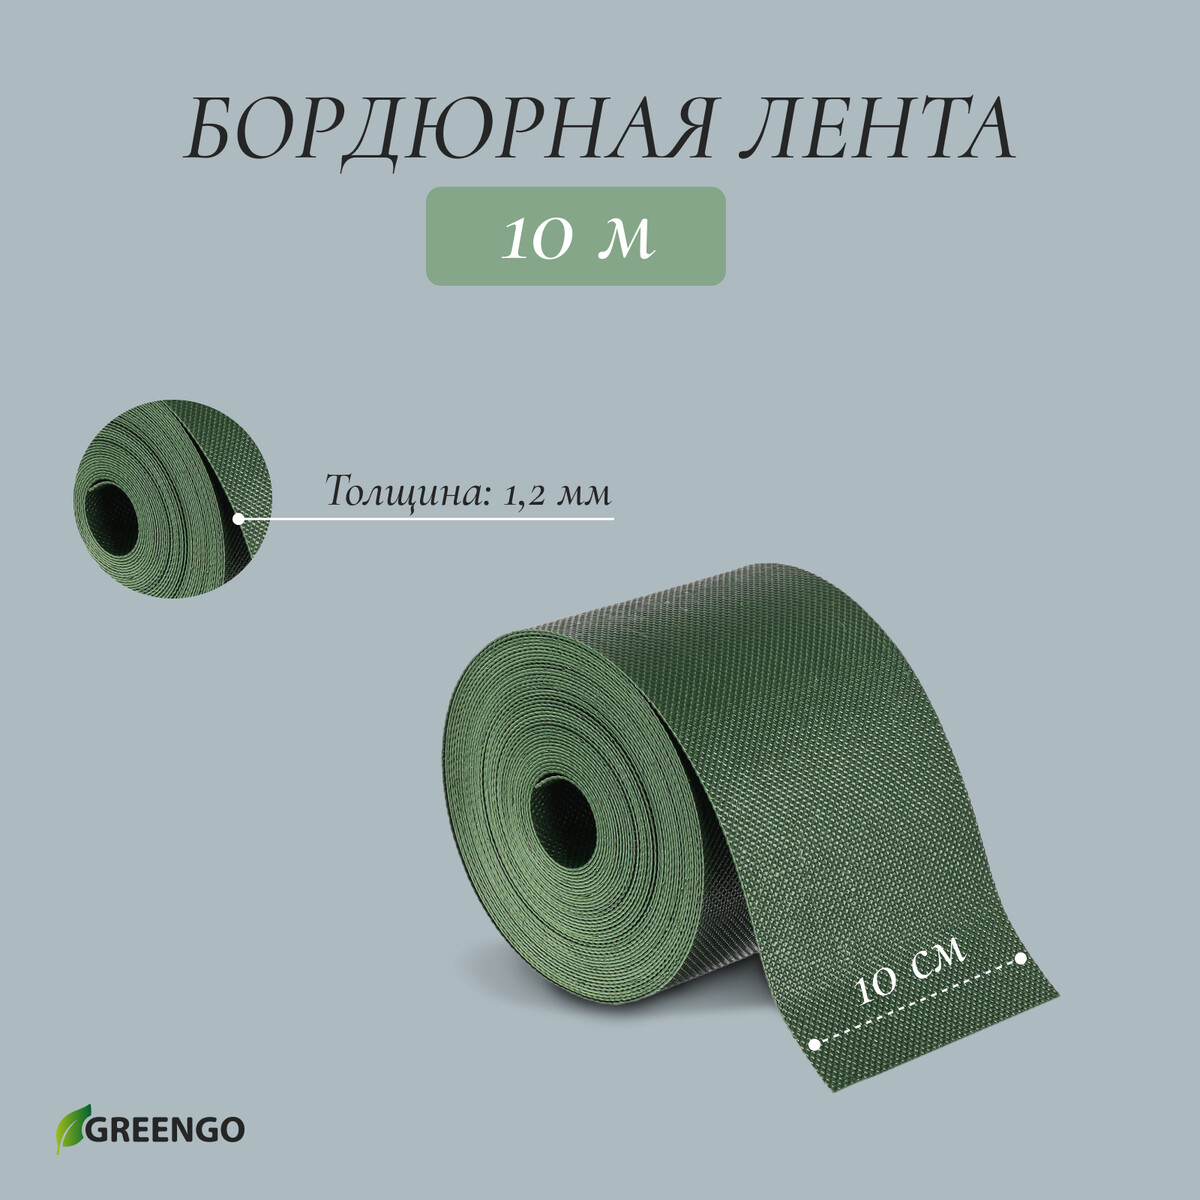 Лента бордюрная, 0.1 × 10 м, толщина 1.2 мм, пластиковая, зеленая, greengo лента бордюрная 0 15 × 9 м толщина 1 2 мм пластиковая фигурная коричневая greengo